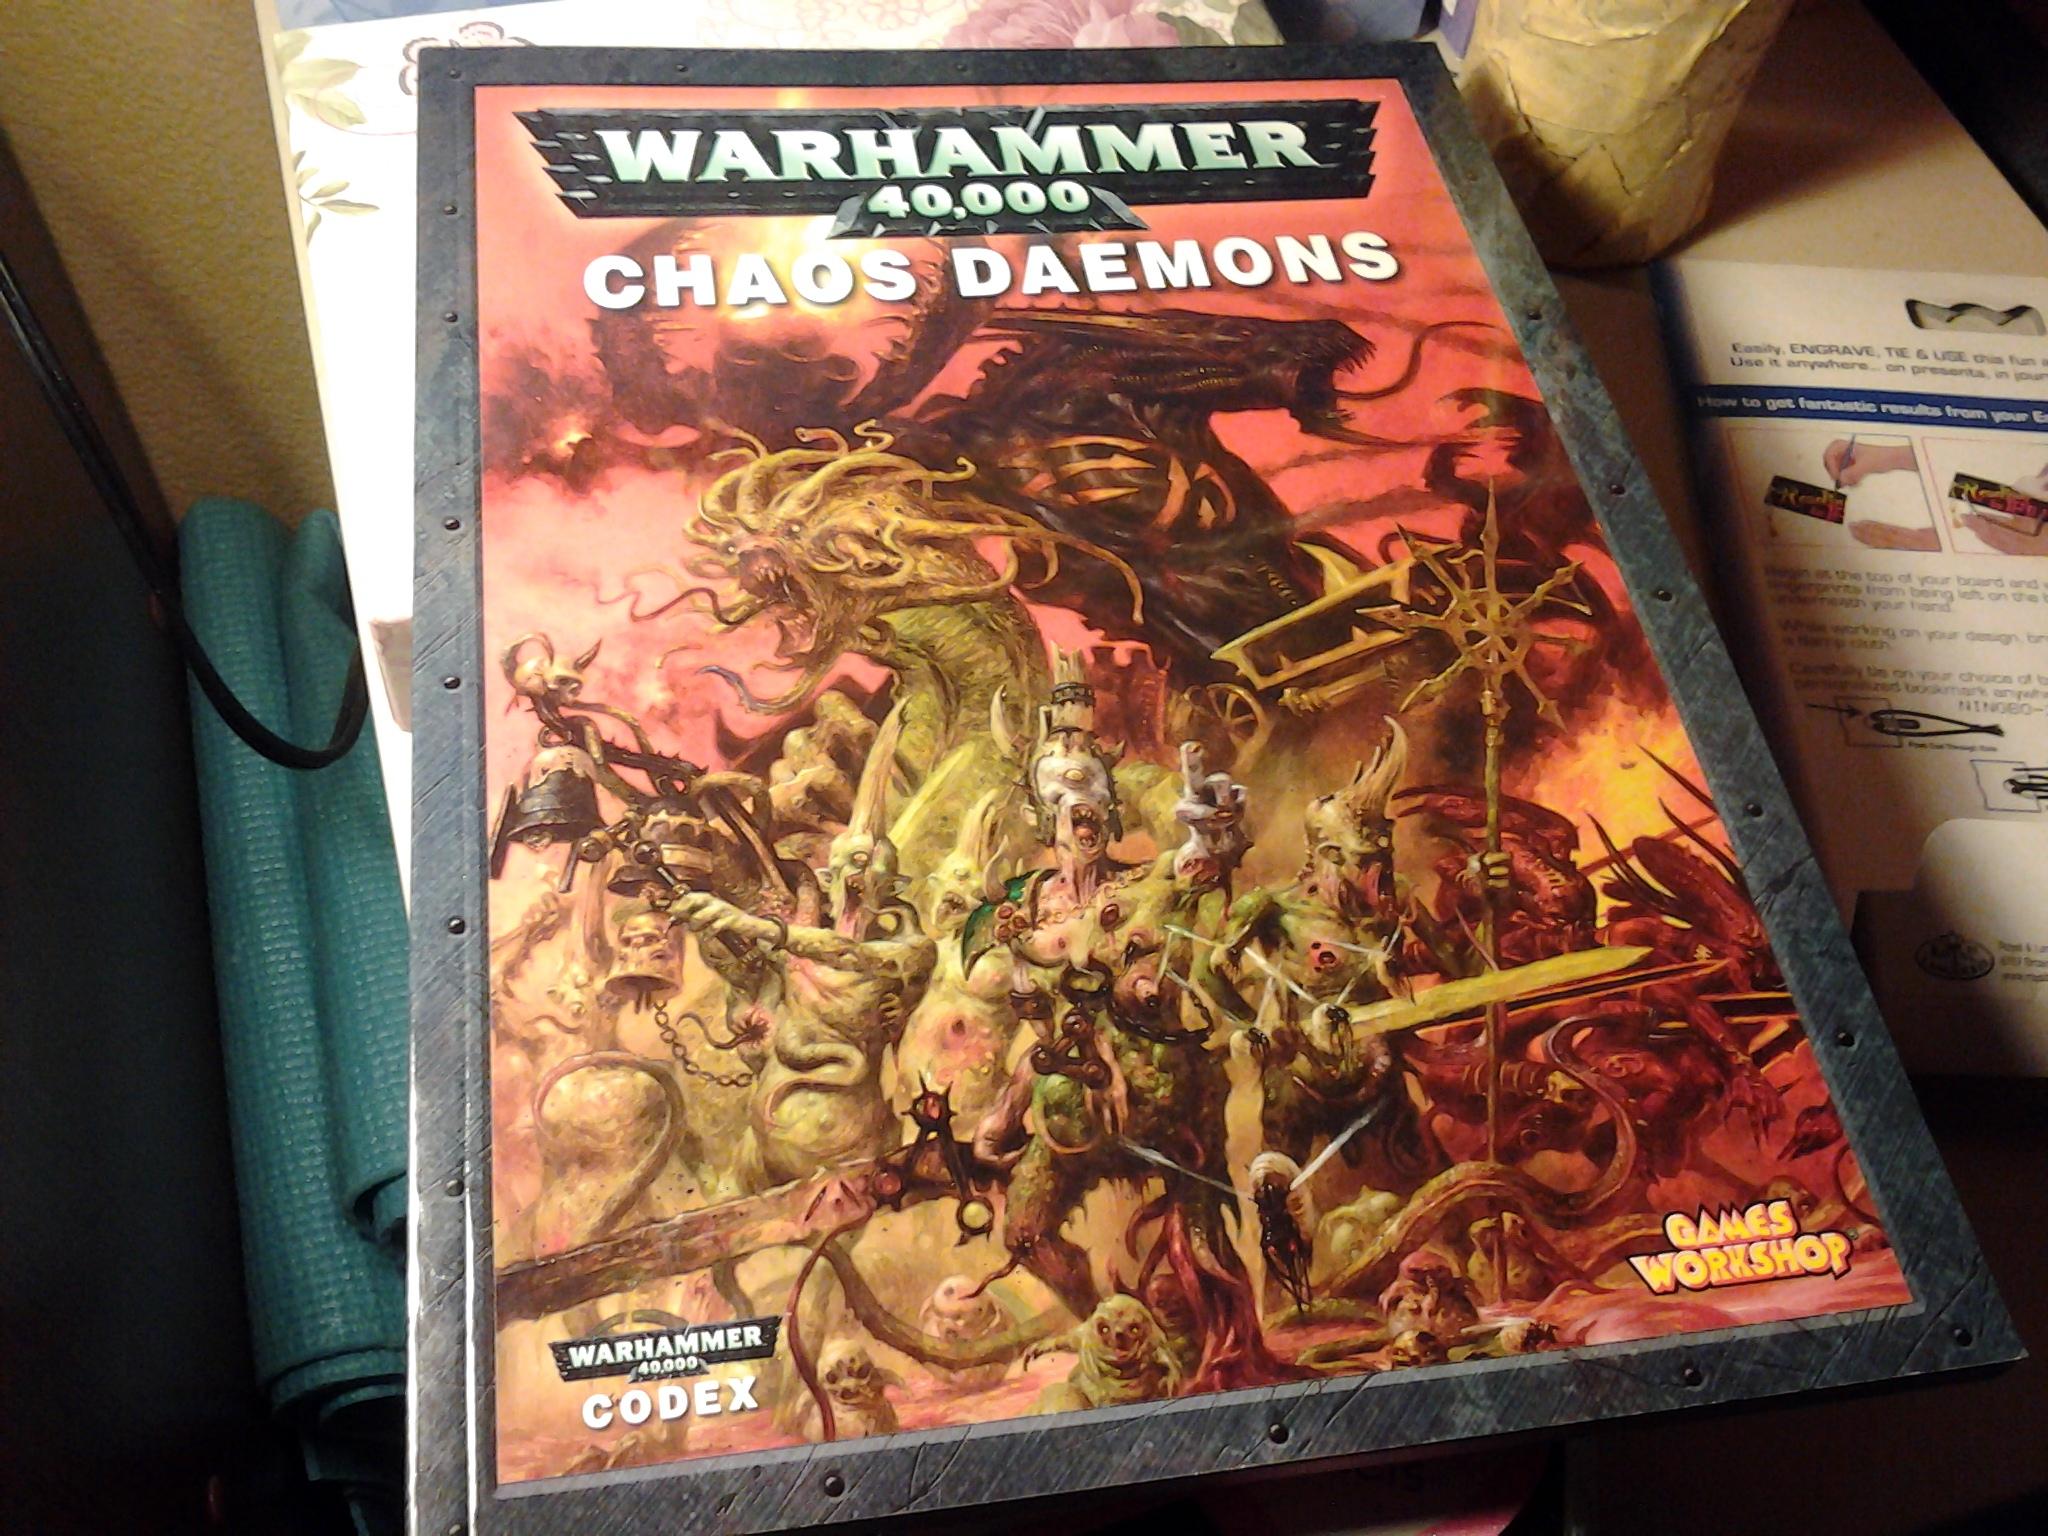 Chaos Daemons, Chaos Space Marines, Swap Shop, Warhammer 40,000, Warhammer Fantasy